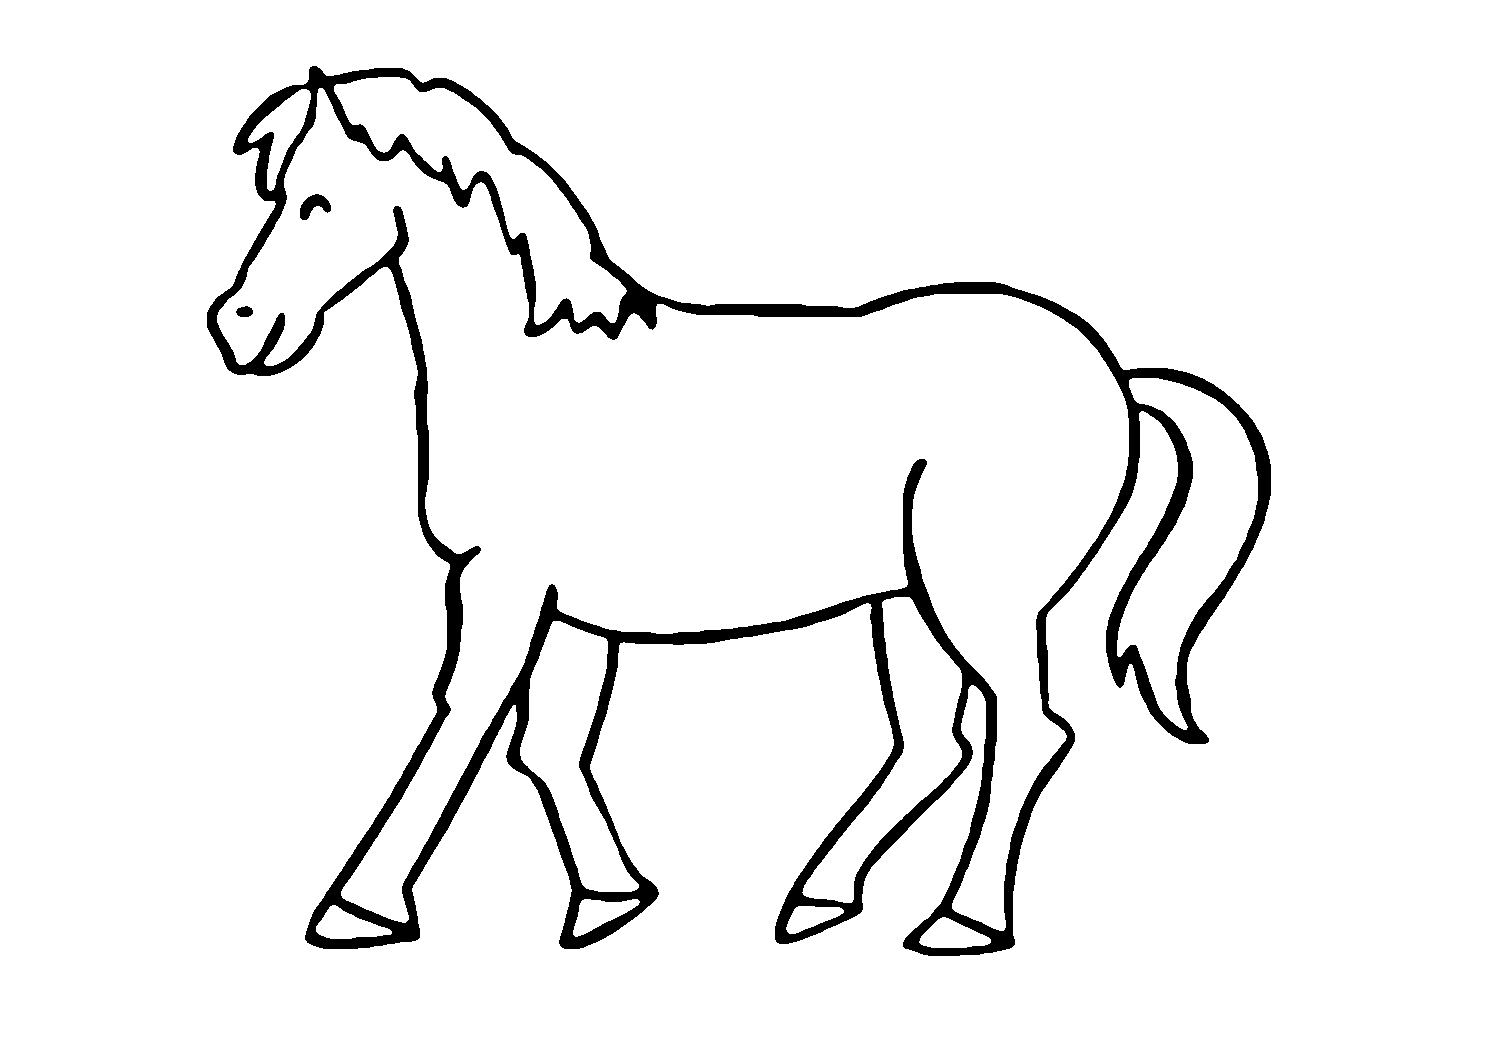 Лошадка для рисования. Раскраска. Лошади. Лошадка раскраска для детей. Силуэт лошади для раскрашивания. Трафарет лошадки для детей.